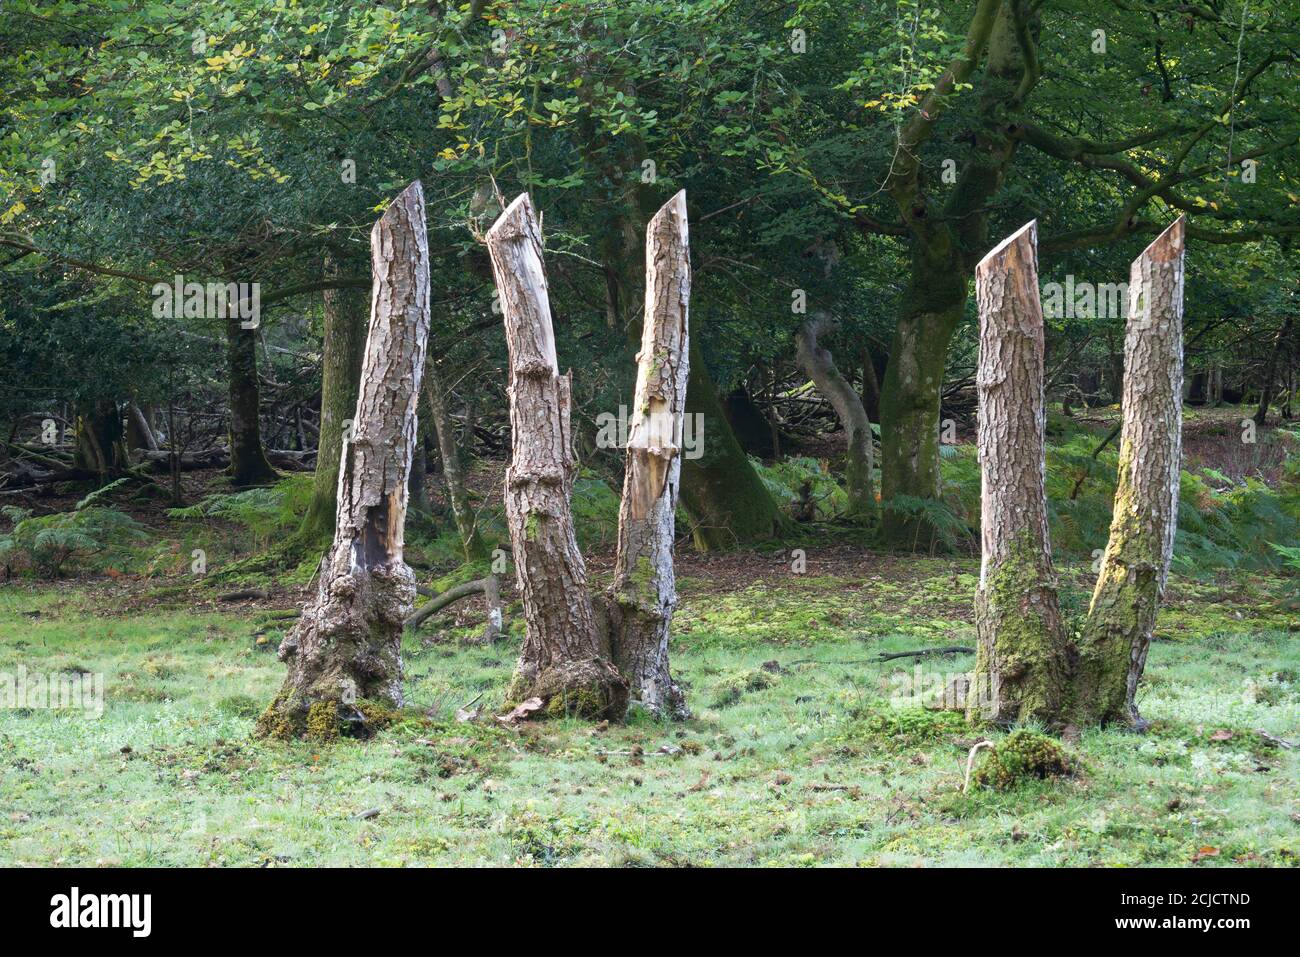 Souches d'arbres montrant les chiffres romains 4 et 5 isolées. Prises à Minstead Woods, Lyndhurst, Angleterre Banque D'Images